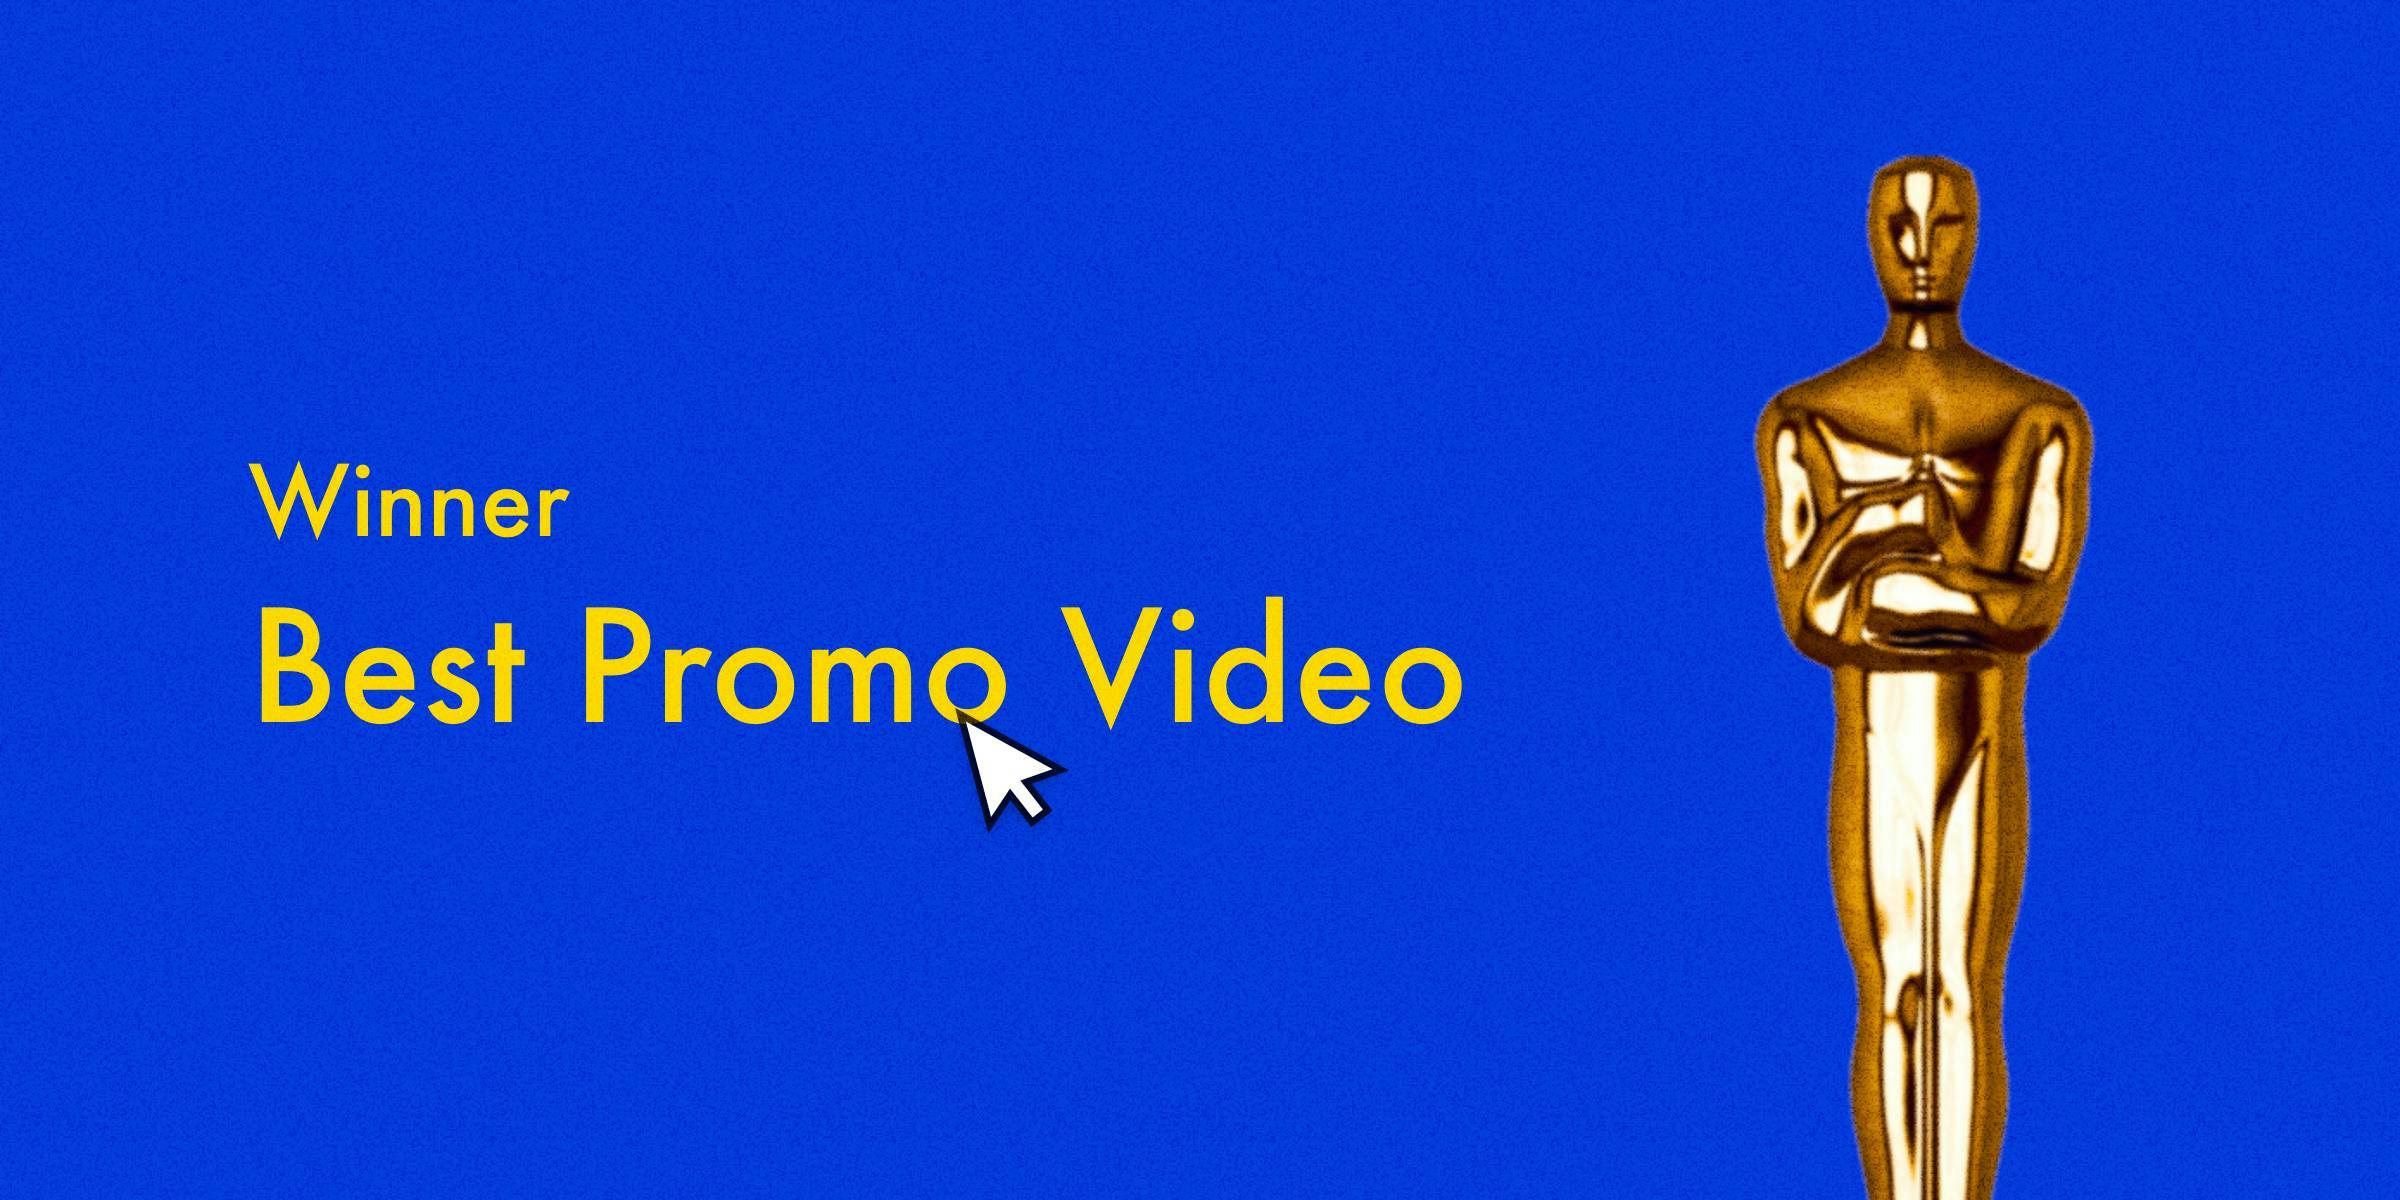 Winner Best Promo Video